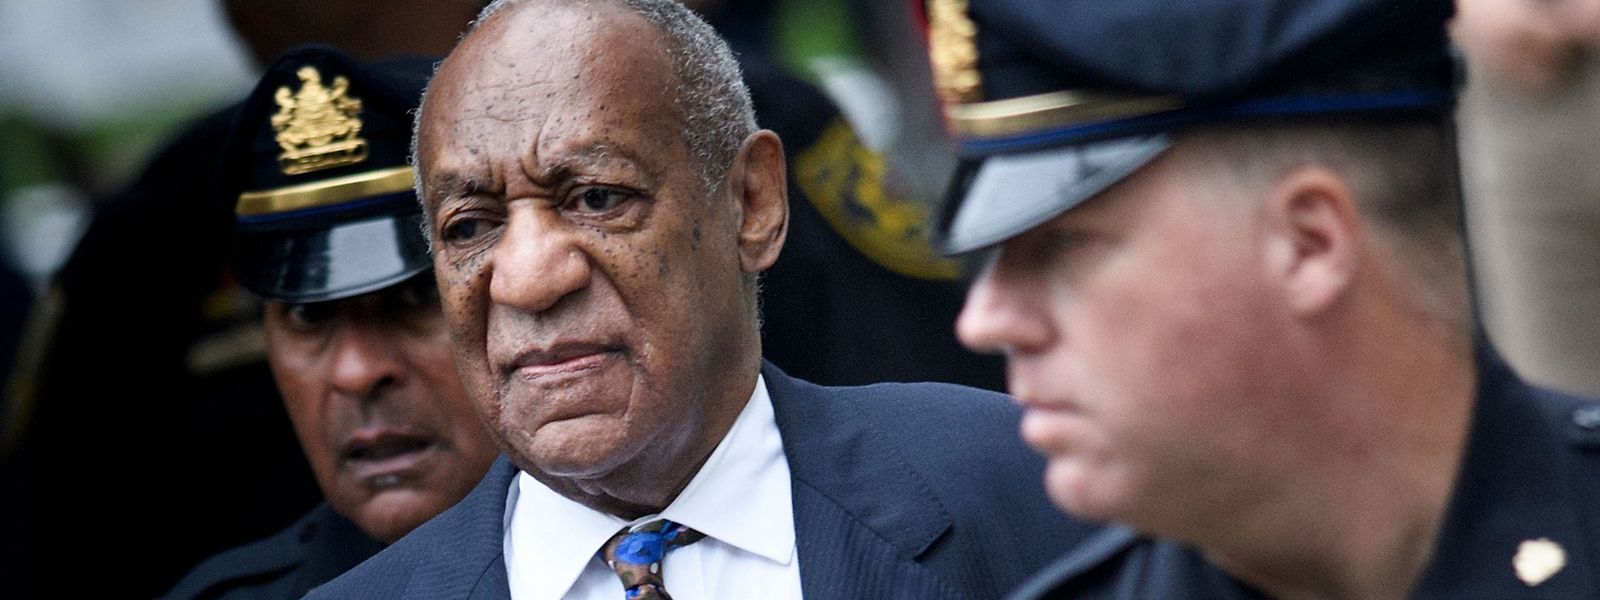 Bill Cosby (84) ist erneut des sexuellen Missbrauchs für schuldig befunden worden.